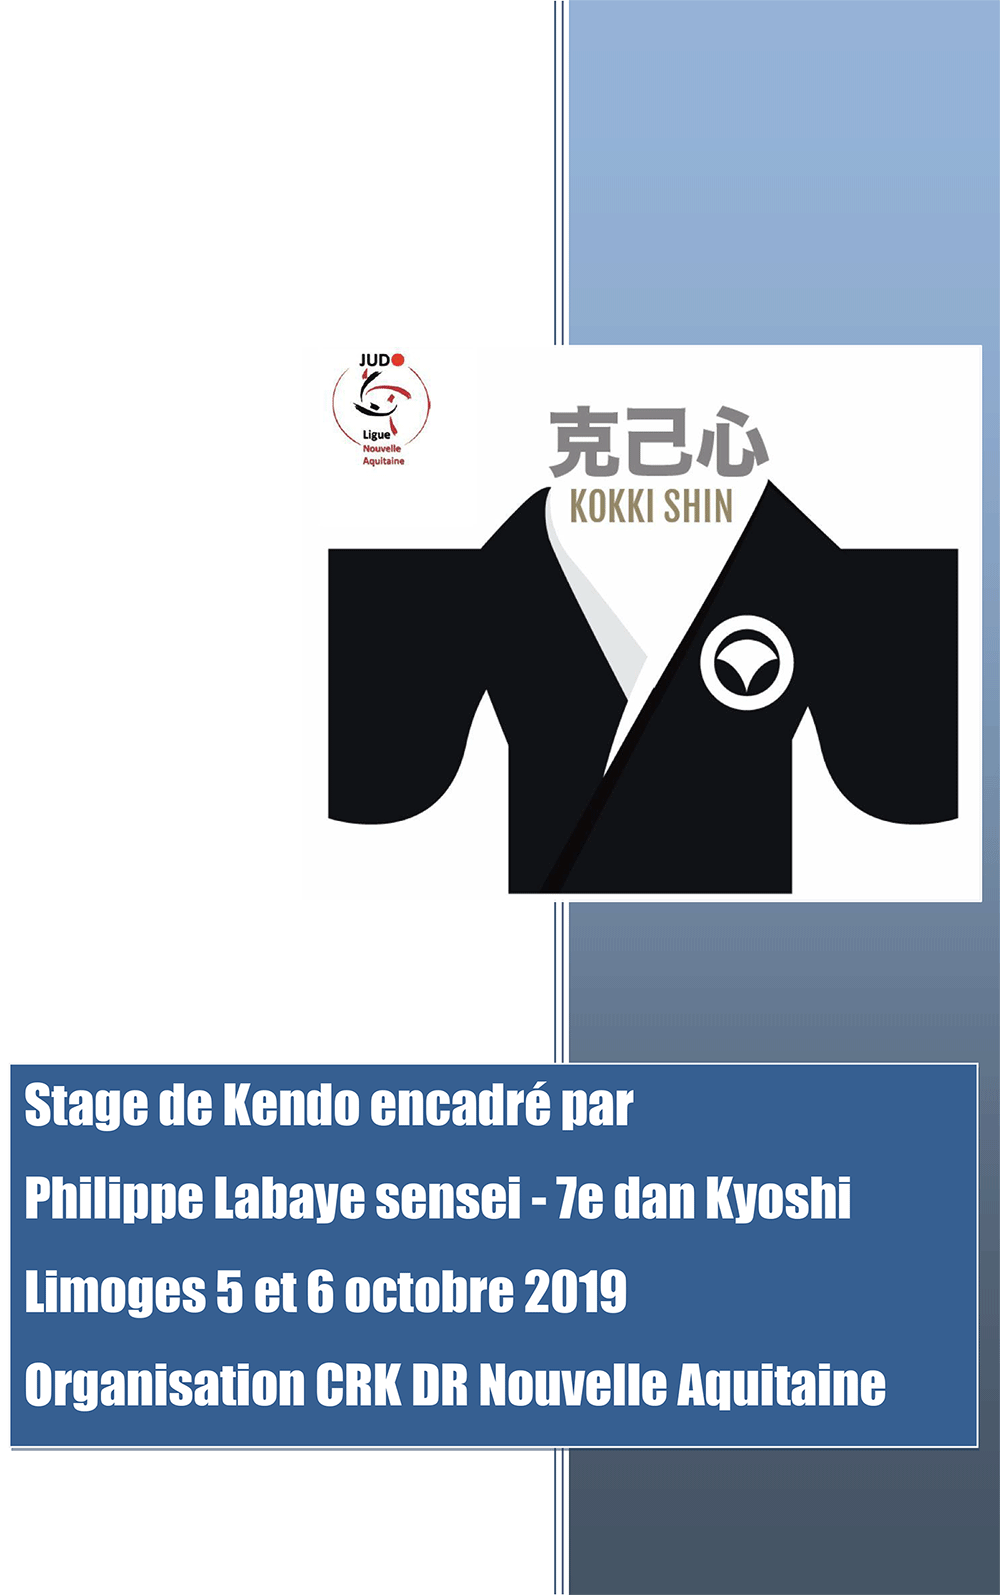 Affiche de présentation du stage de Kendo de Limoges 2019